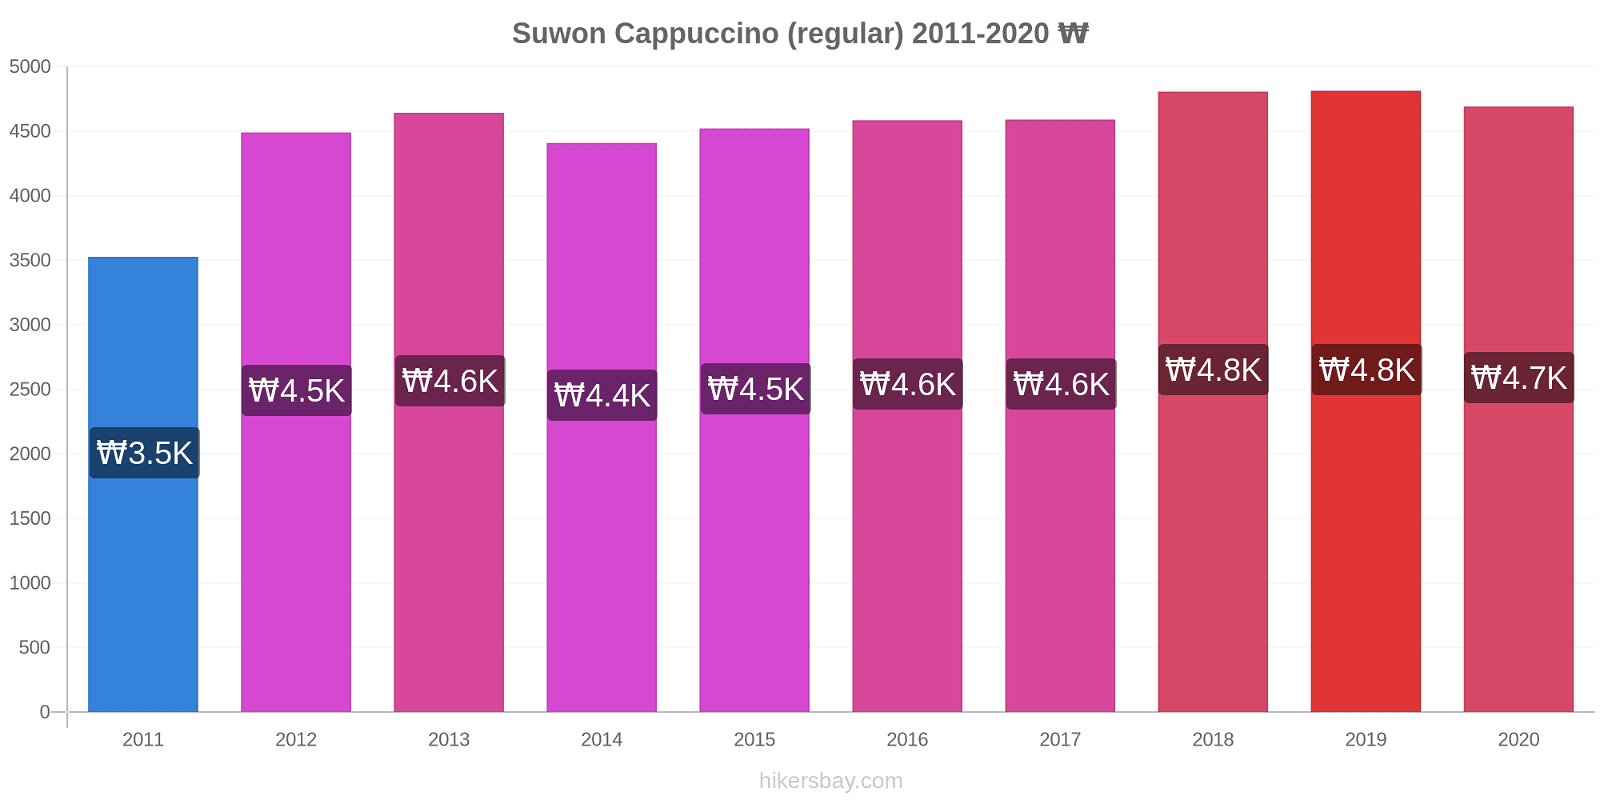 Suwon price changes Cappuccino (regular) hikersbay.com